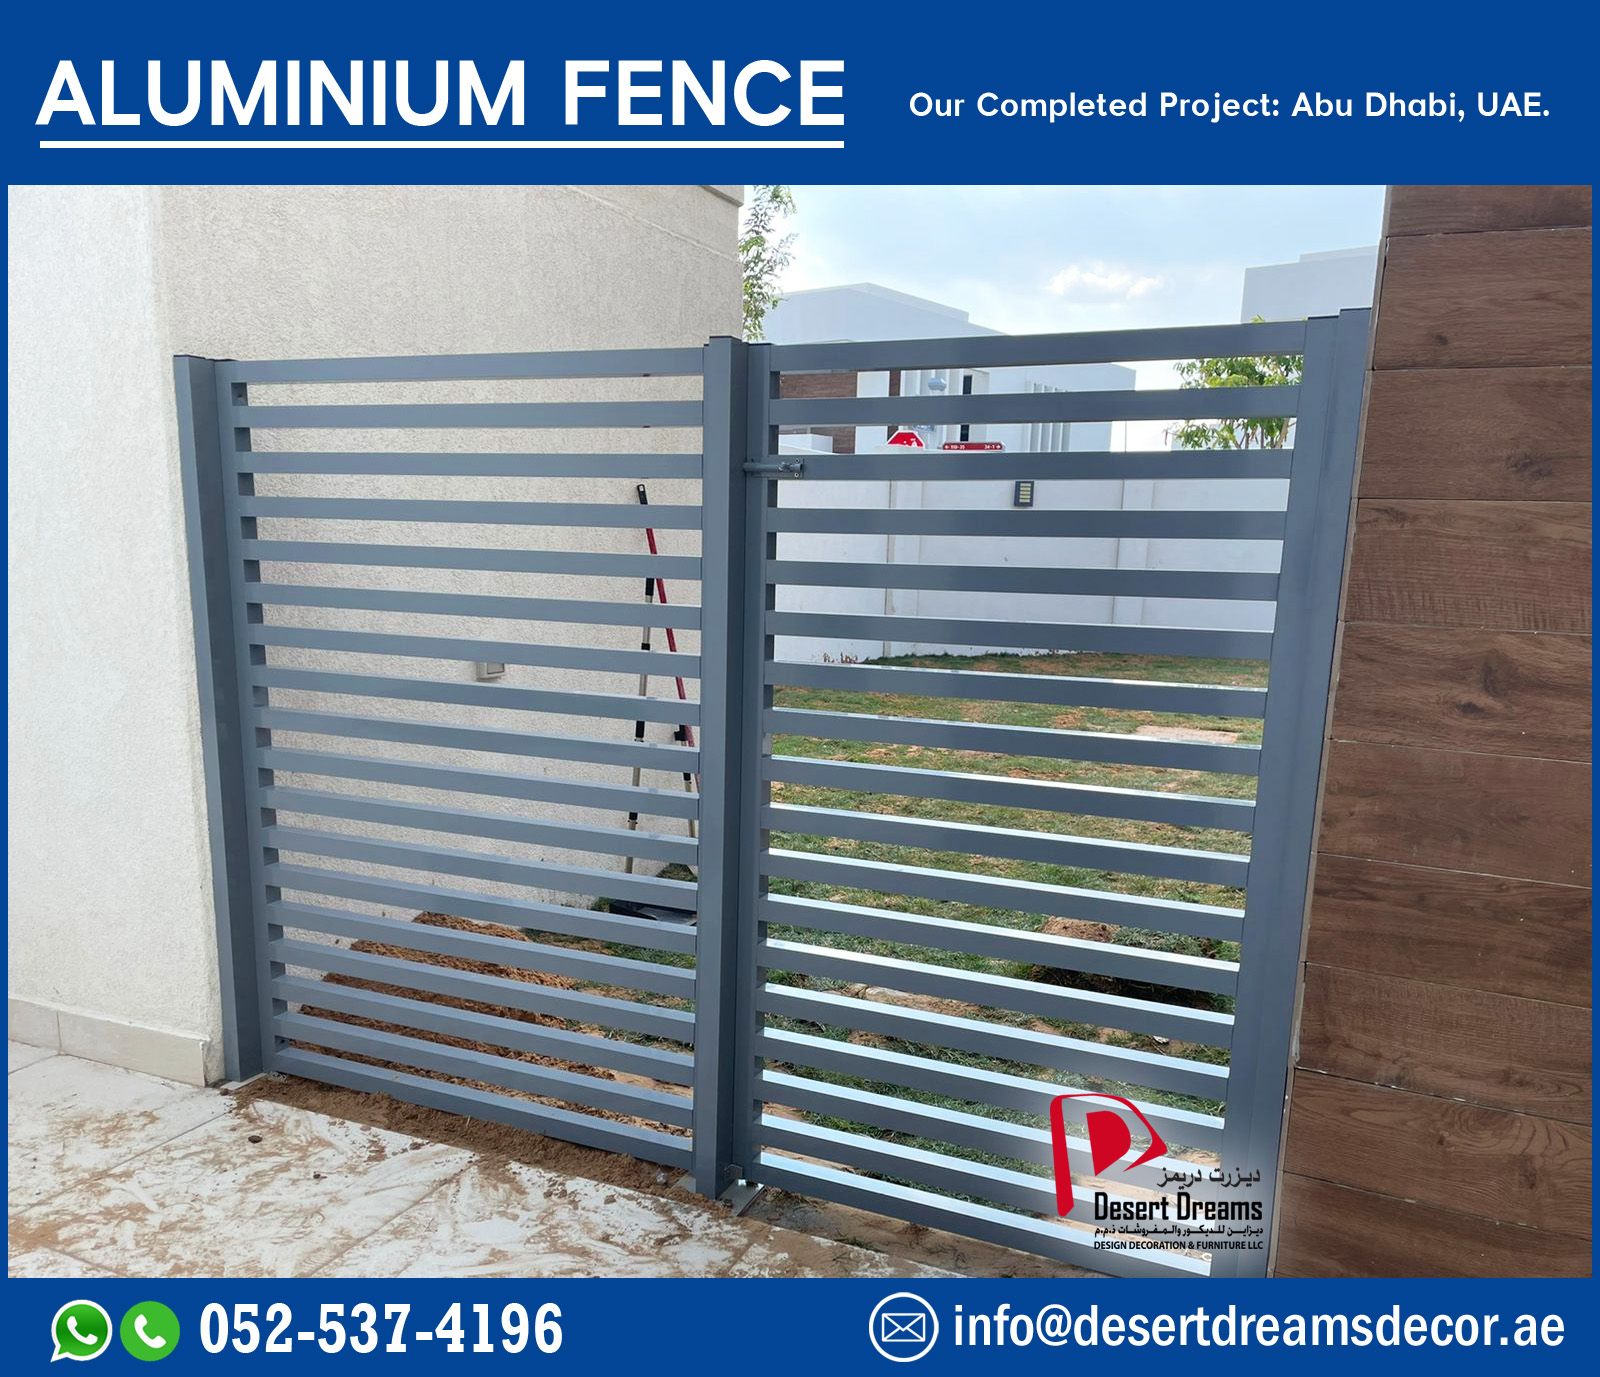 Aluminum Fence Company Dubai | Aluminum Fence Supply in Uae.